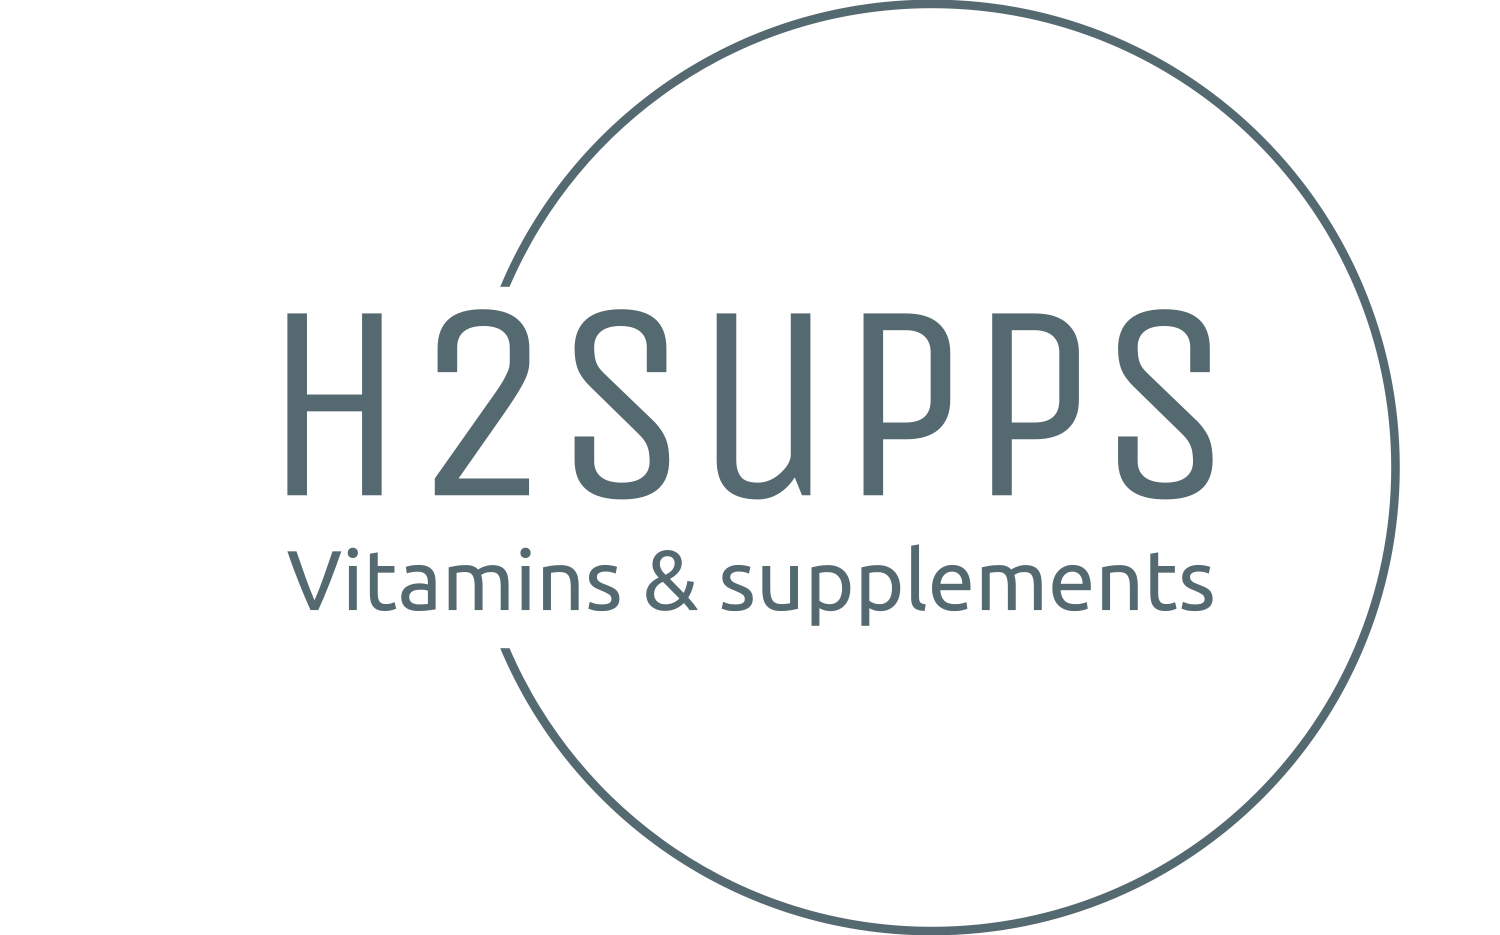 H2supps supplements & vitamins 